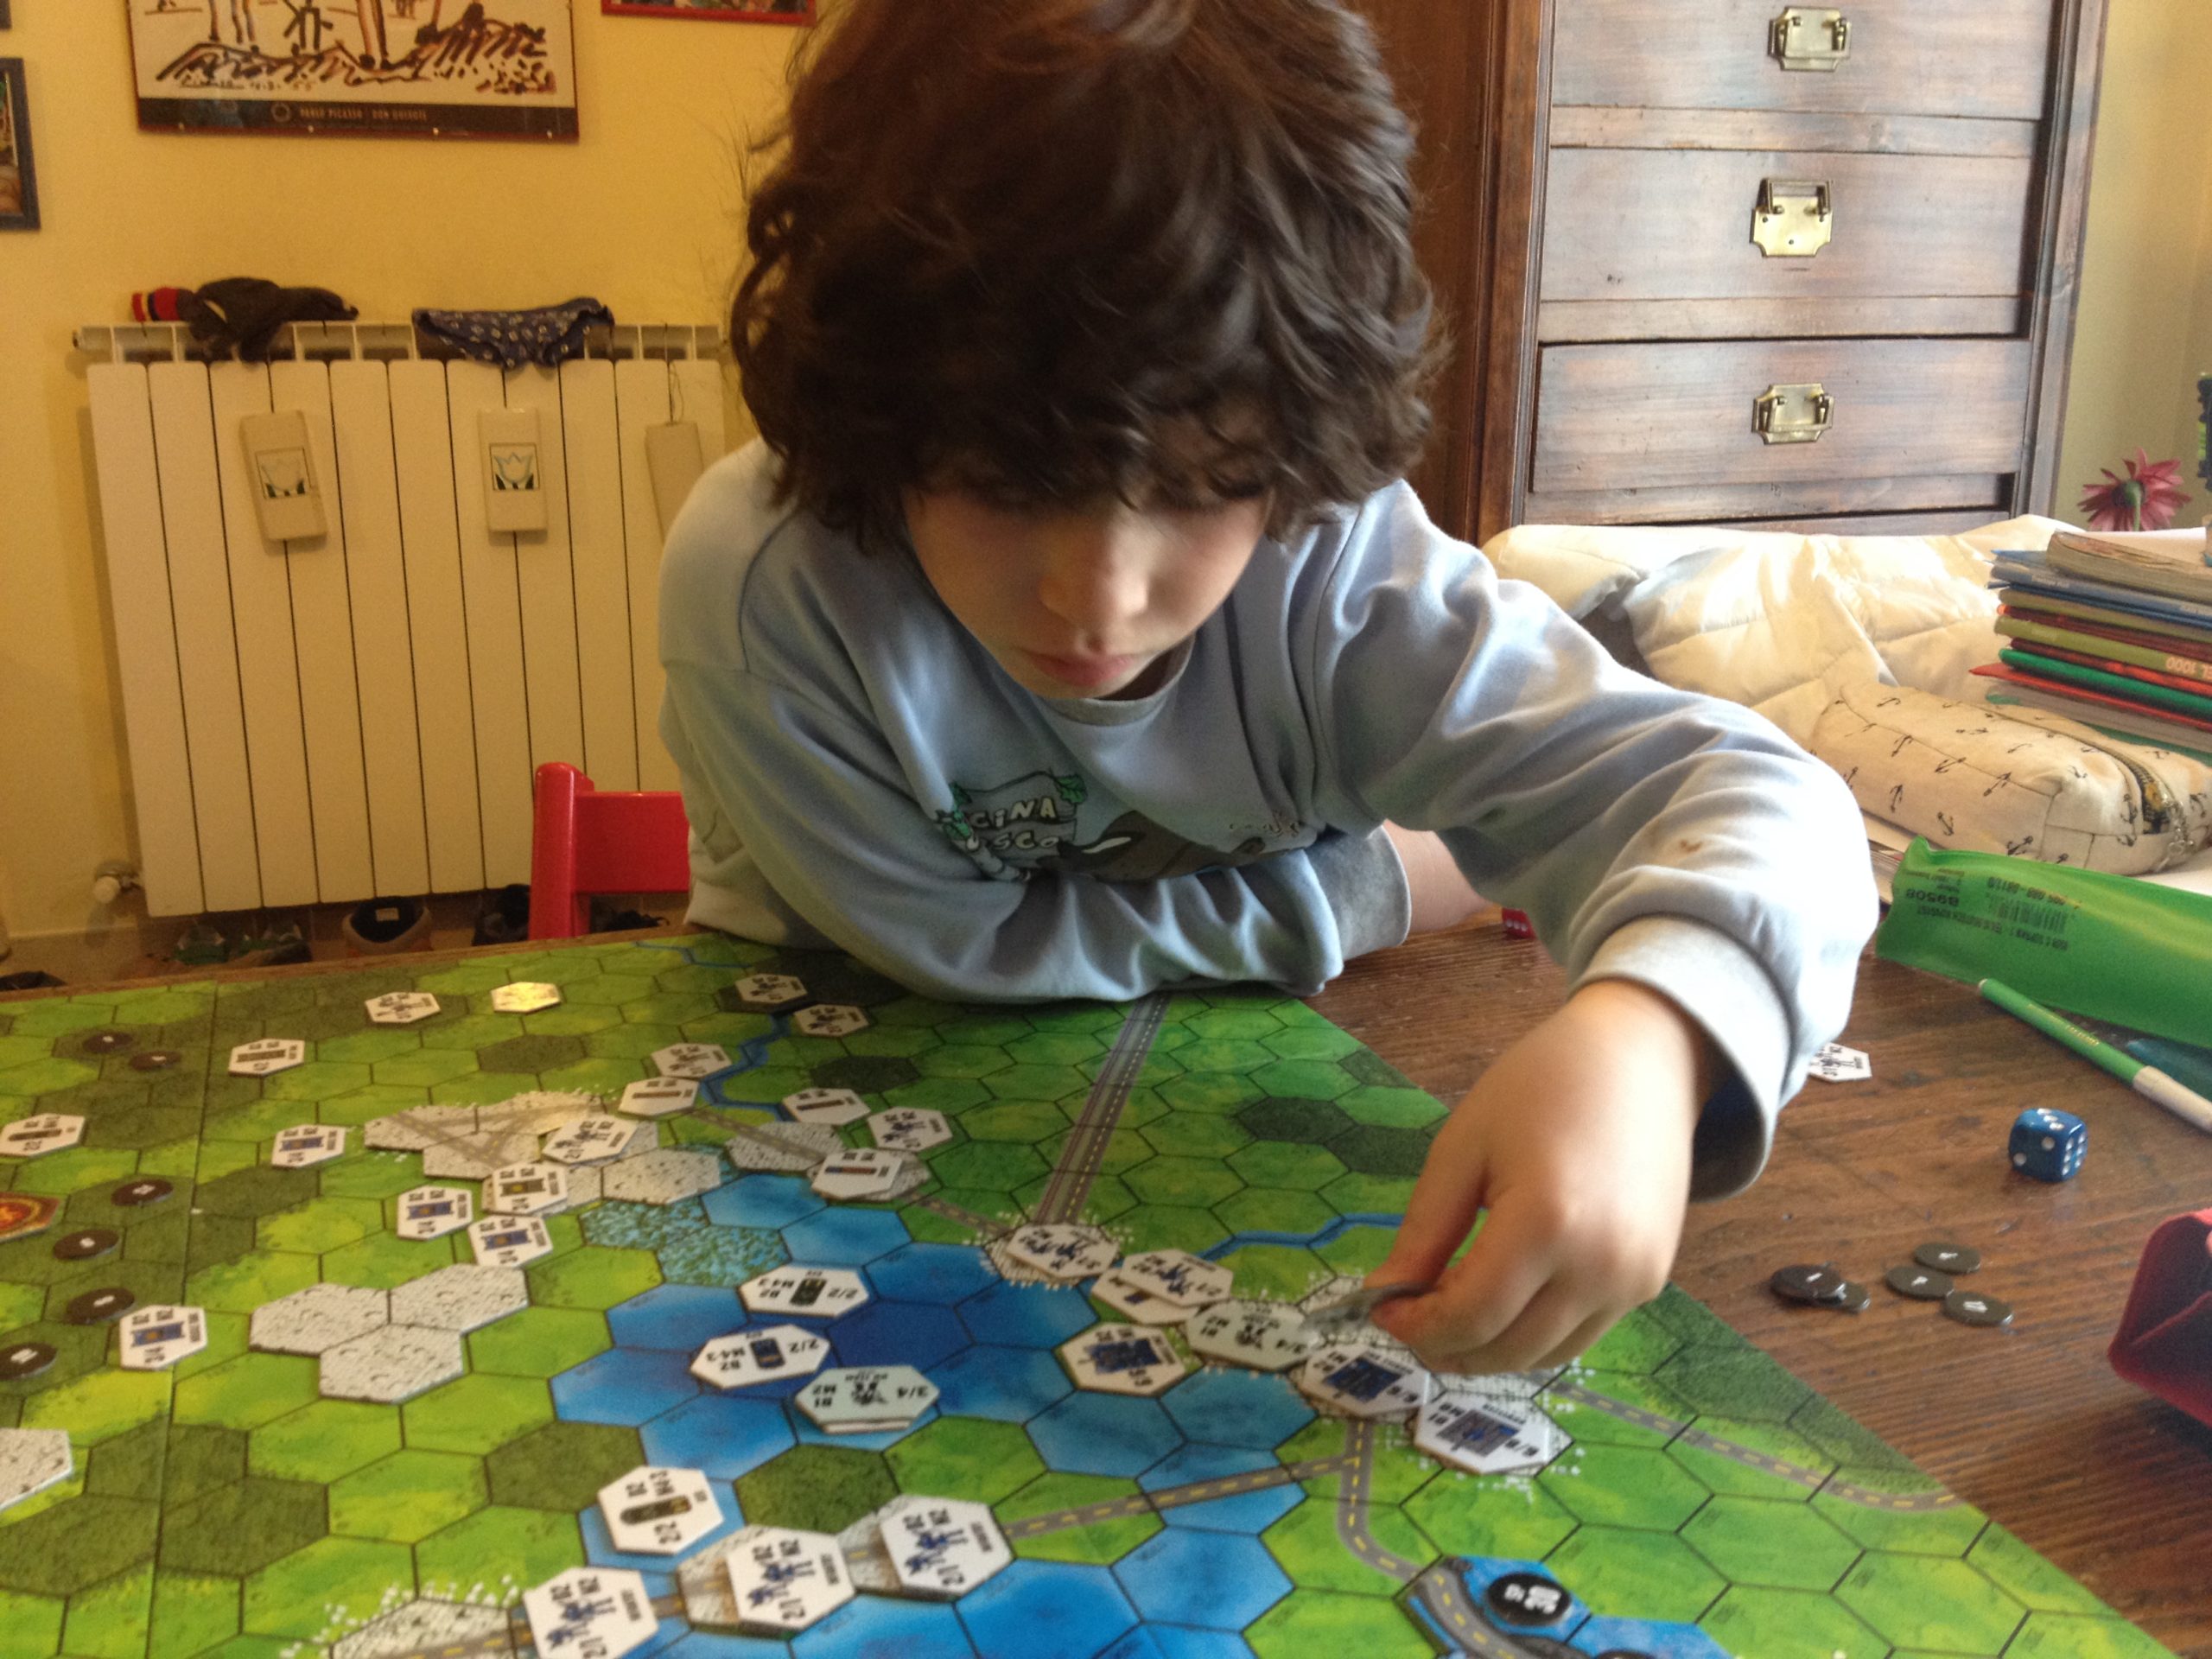 Giocare con i propri figli: una nuova rubrica su La Gazzetta di Modena